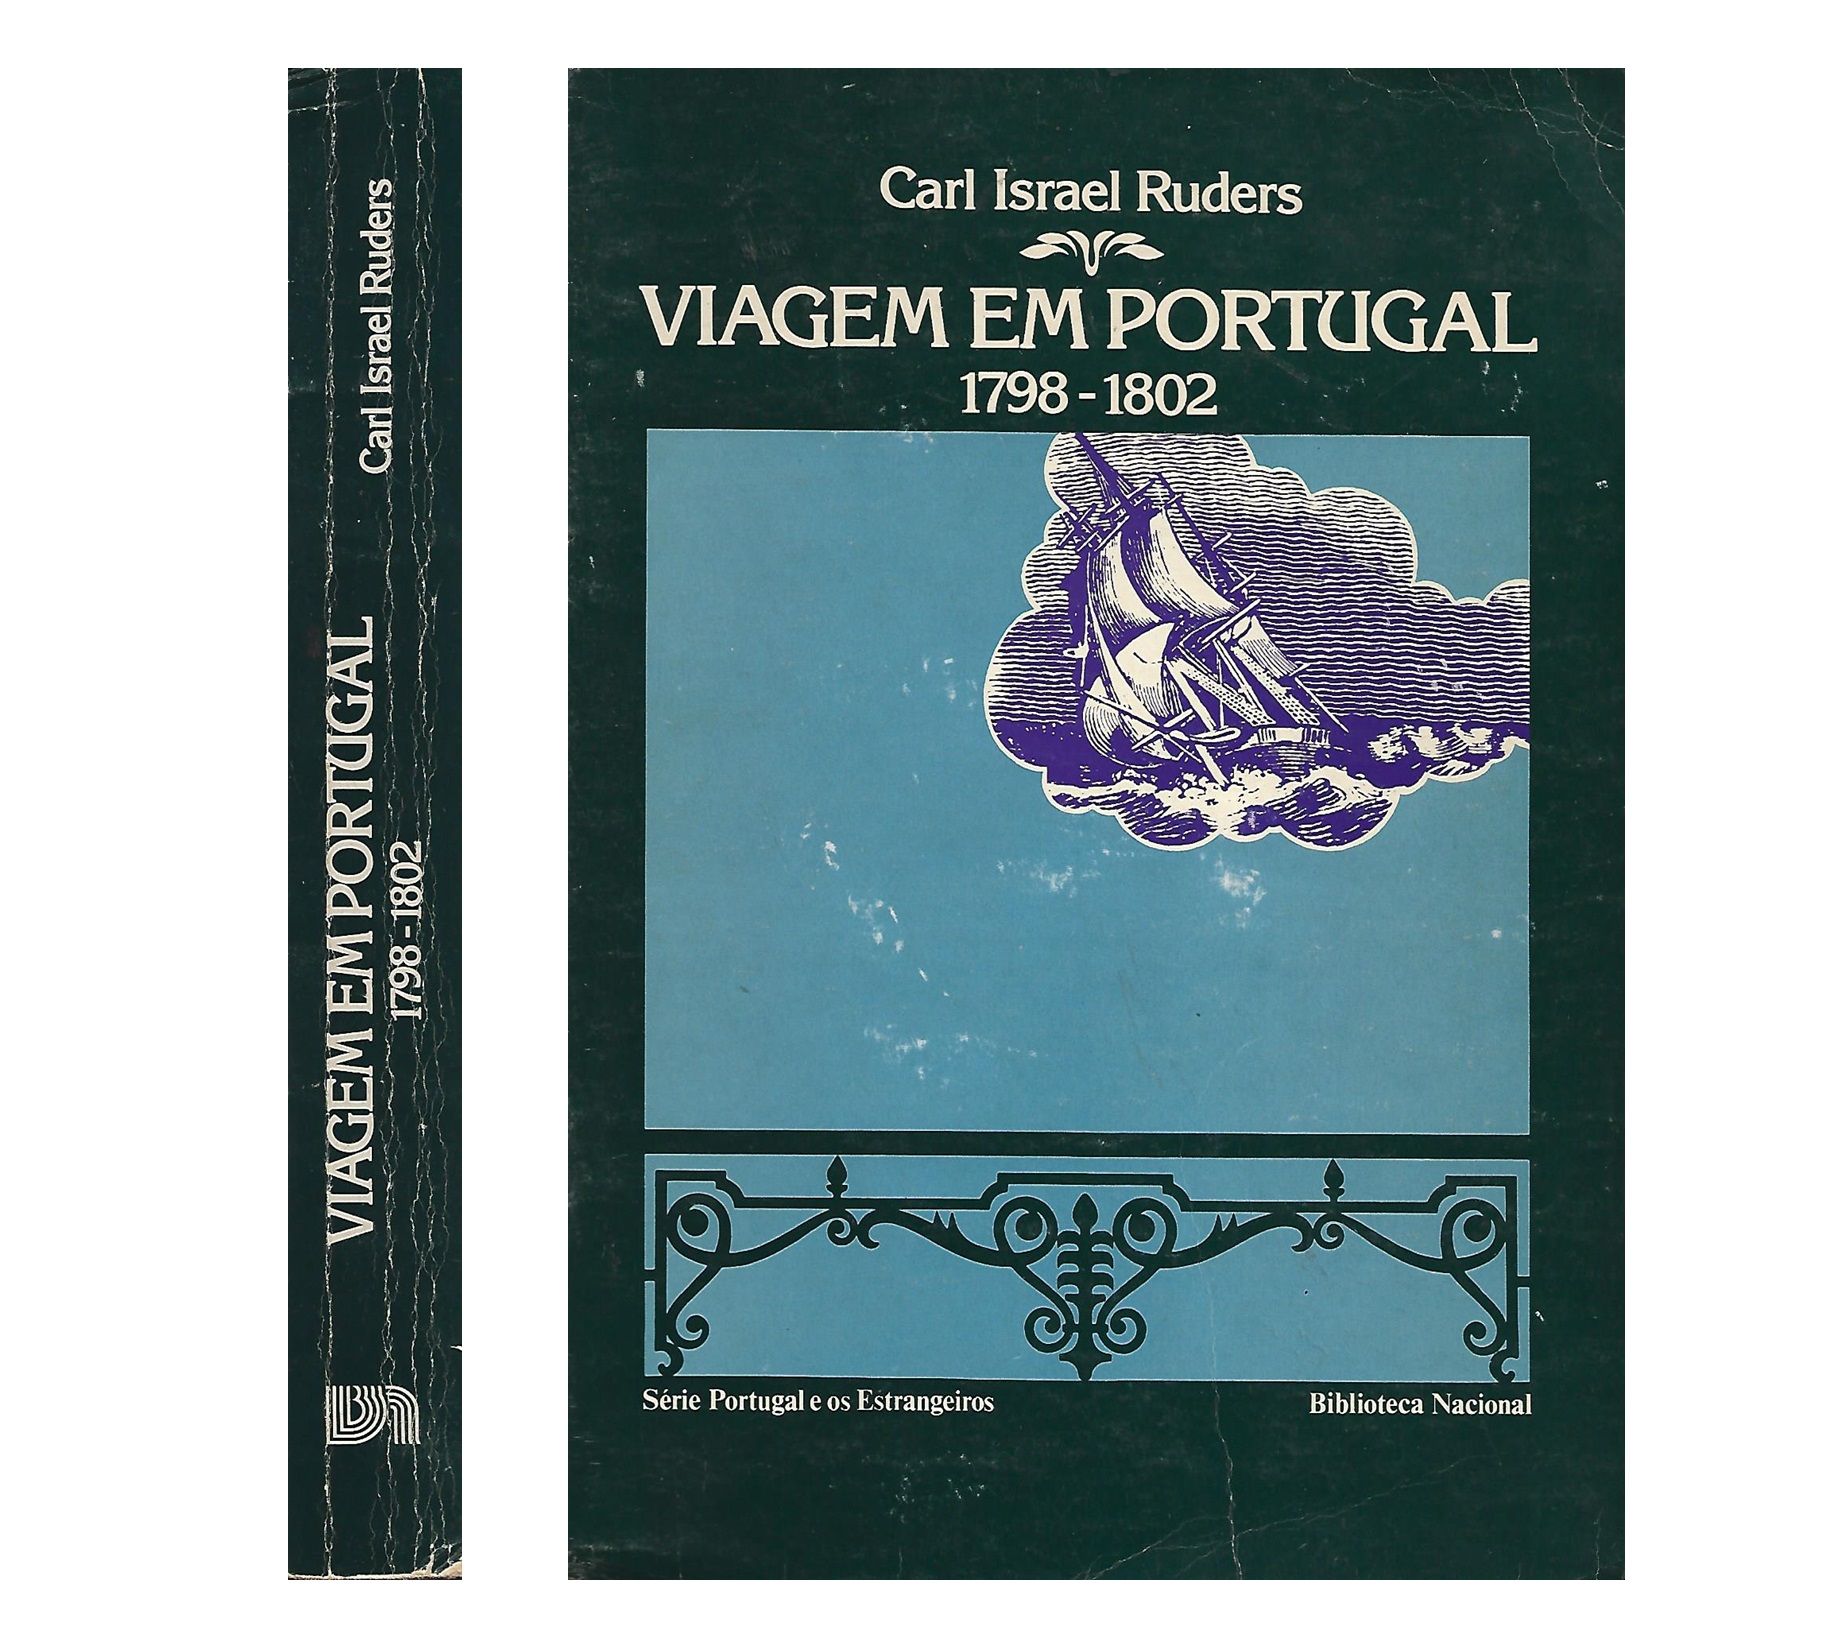 VIAGEM EM PORTUGAL, 1798-1802